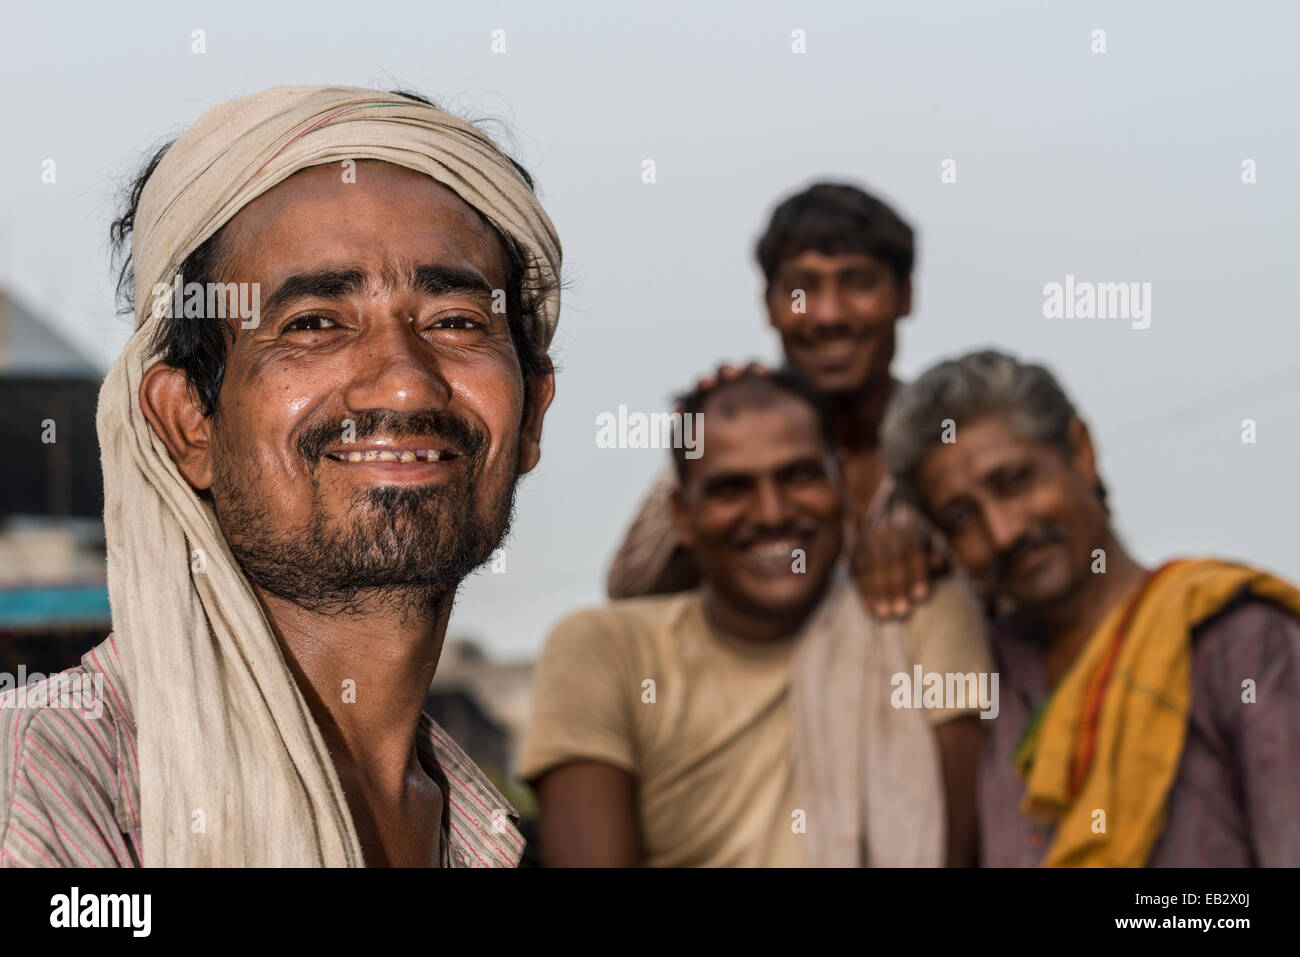 Portrait of a cycle rickshaw driver, Old Delhi, New Delhi, Delhi, India Stock Photo